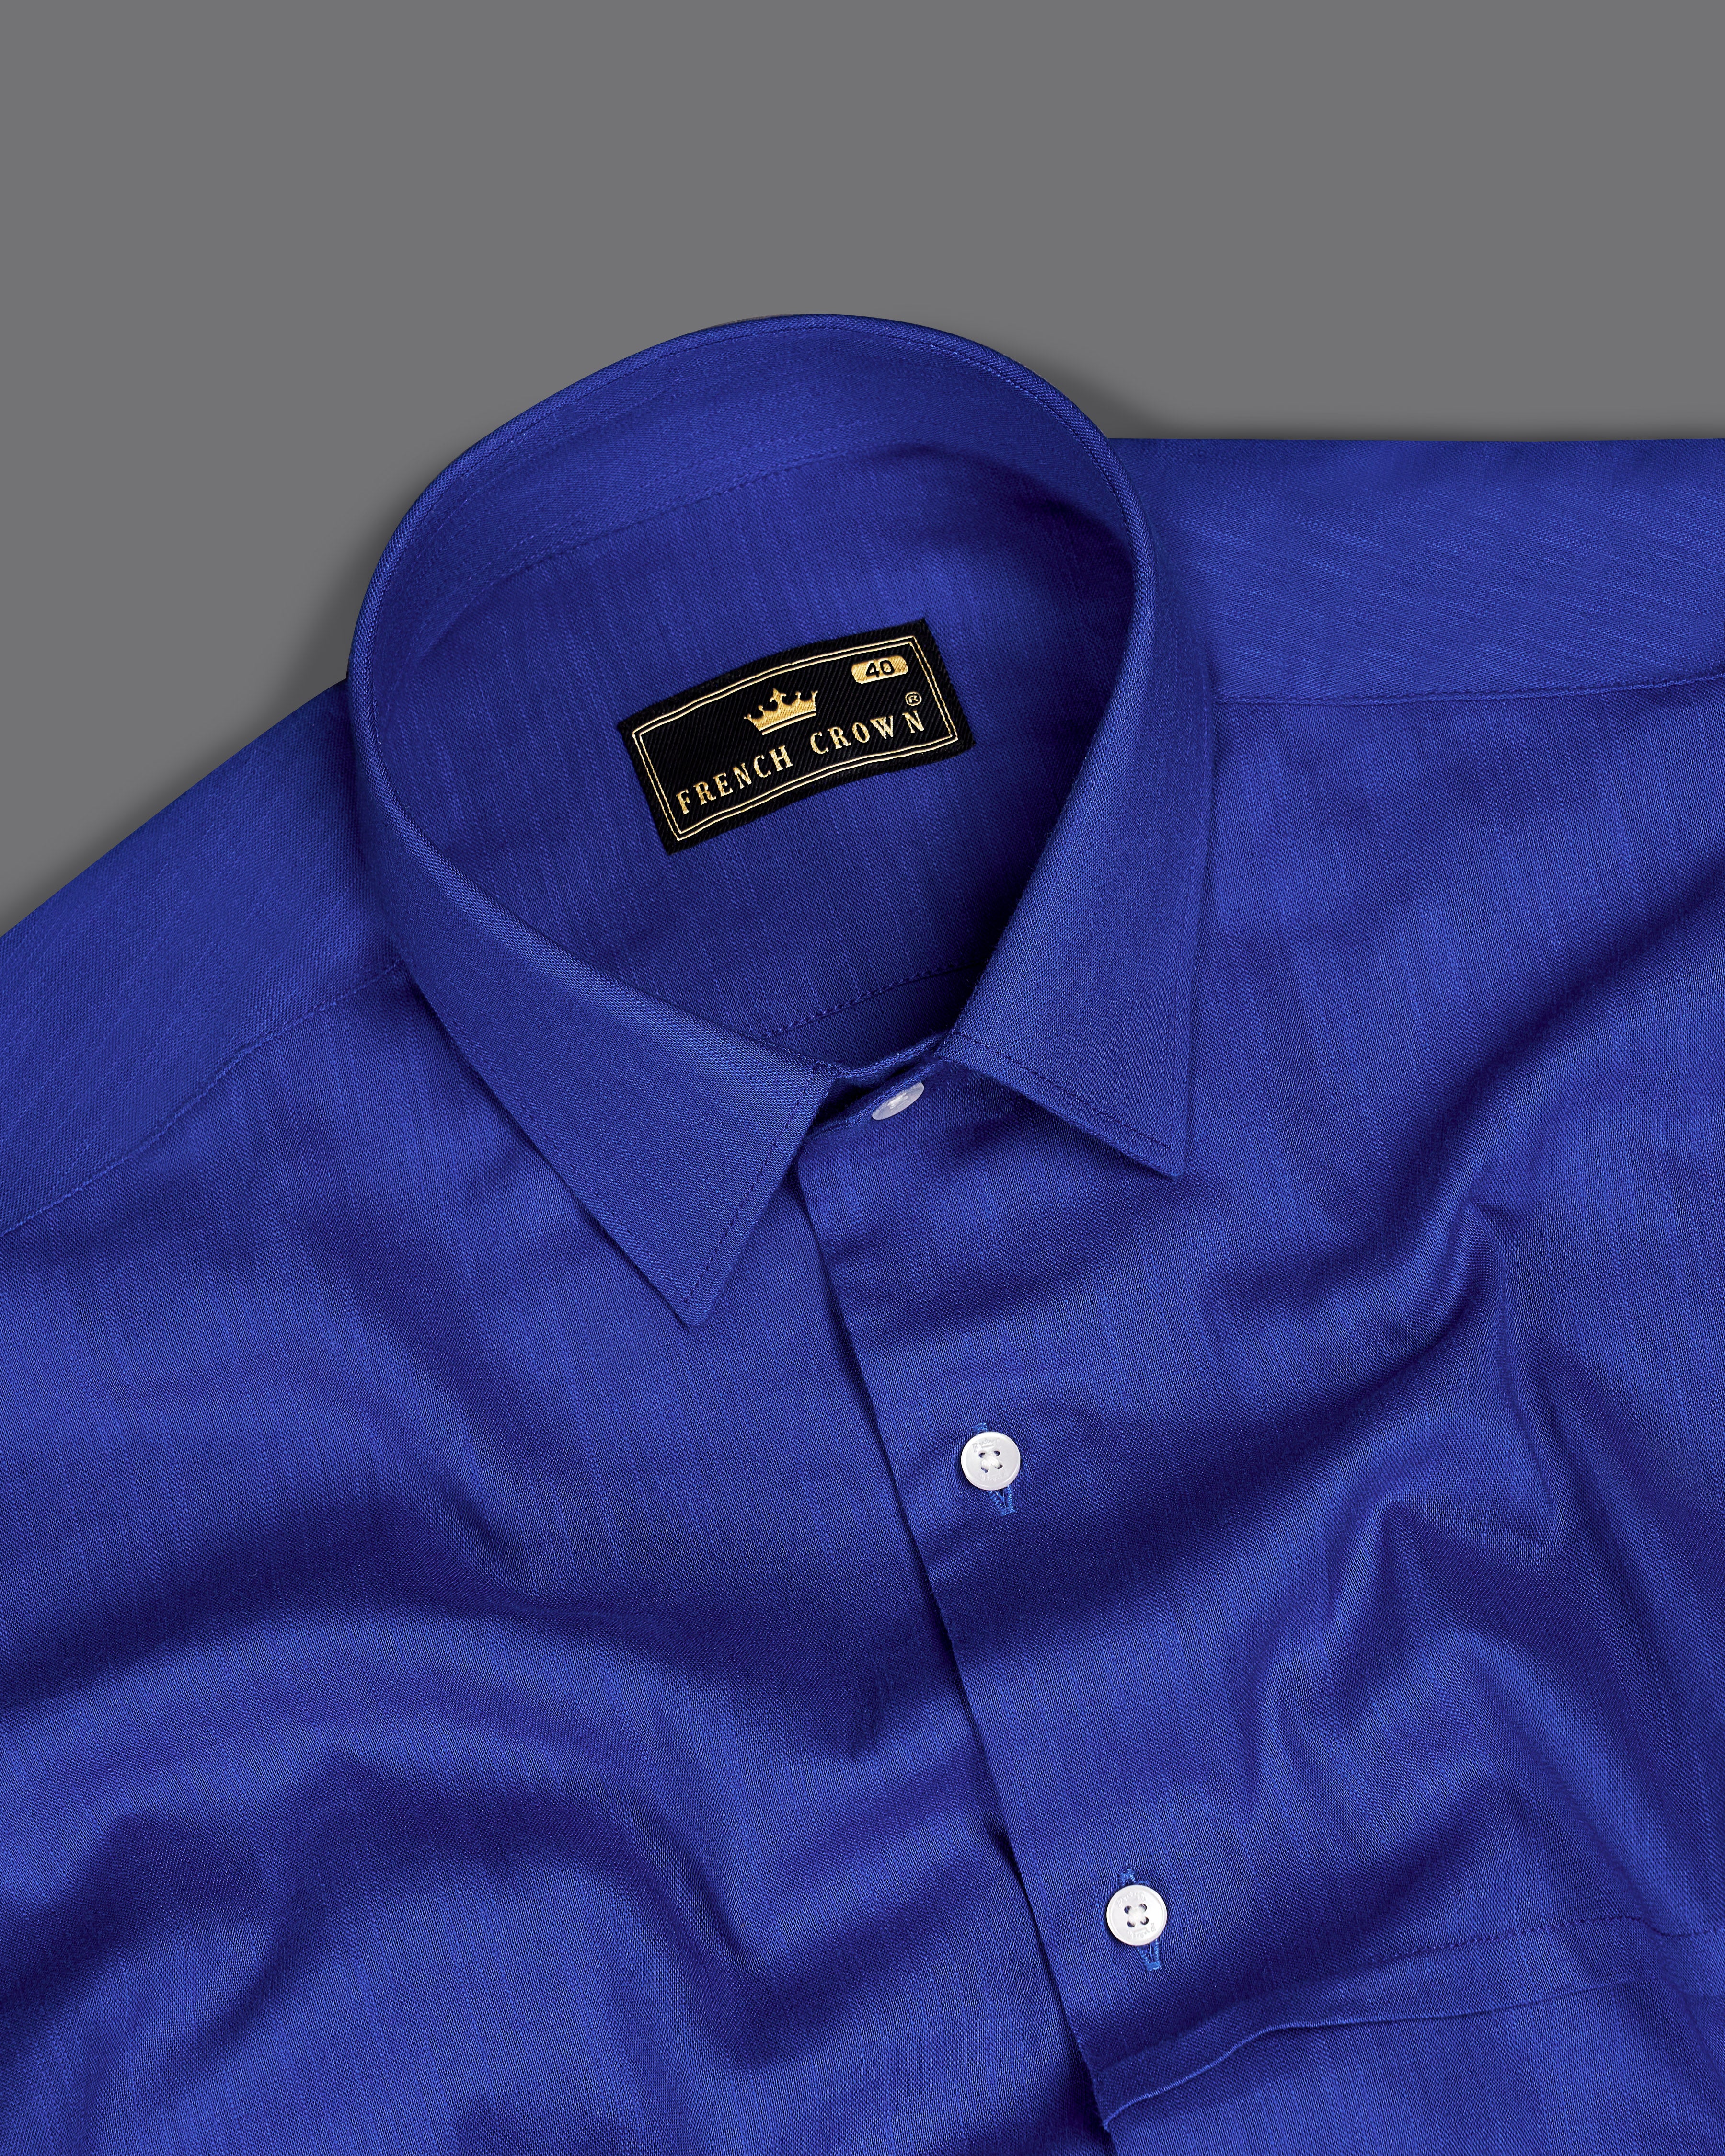 Meteorite Blue Premium Cotton Designer Shirt 9268-P356-38,9268-P356-H-38,9268-P356-39,9268-P356-H-39,9268-P356-40,9268-P356-H-40,9268-P356-42,9268-P356-H-42,9268-P356-44,9268-P356-H-44,9268-P356-46,9268-P356-H-46,9268-P356-48,9268-P356-H-48,9268-P356-50,9268-P356-H-50,9268-P356-52,9268-P356-H-52